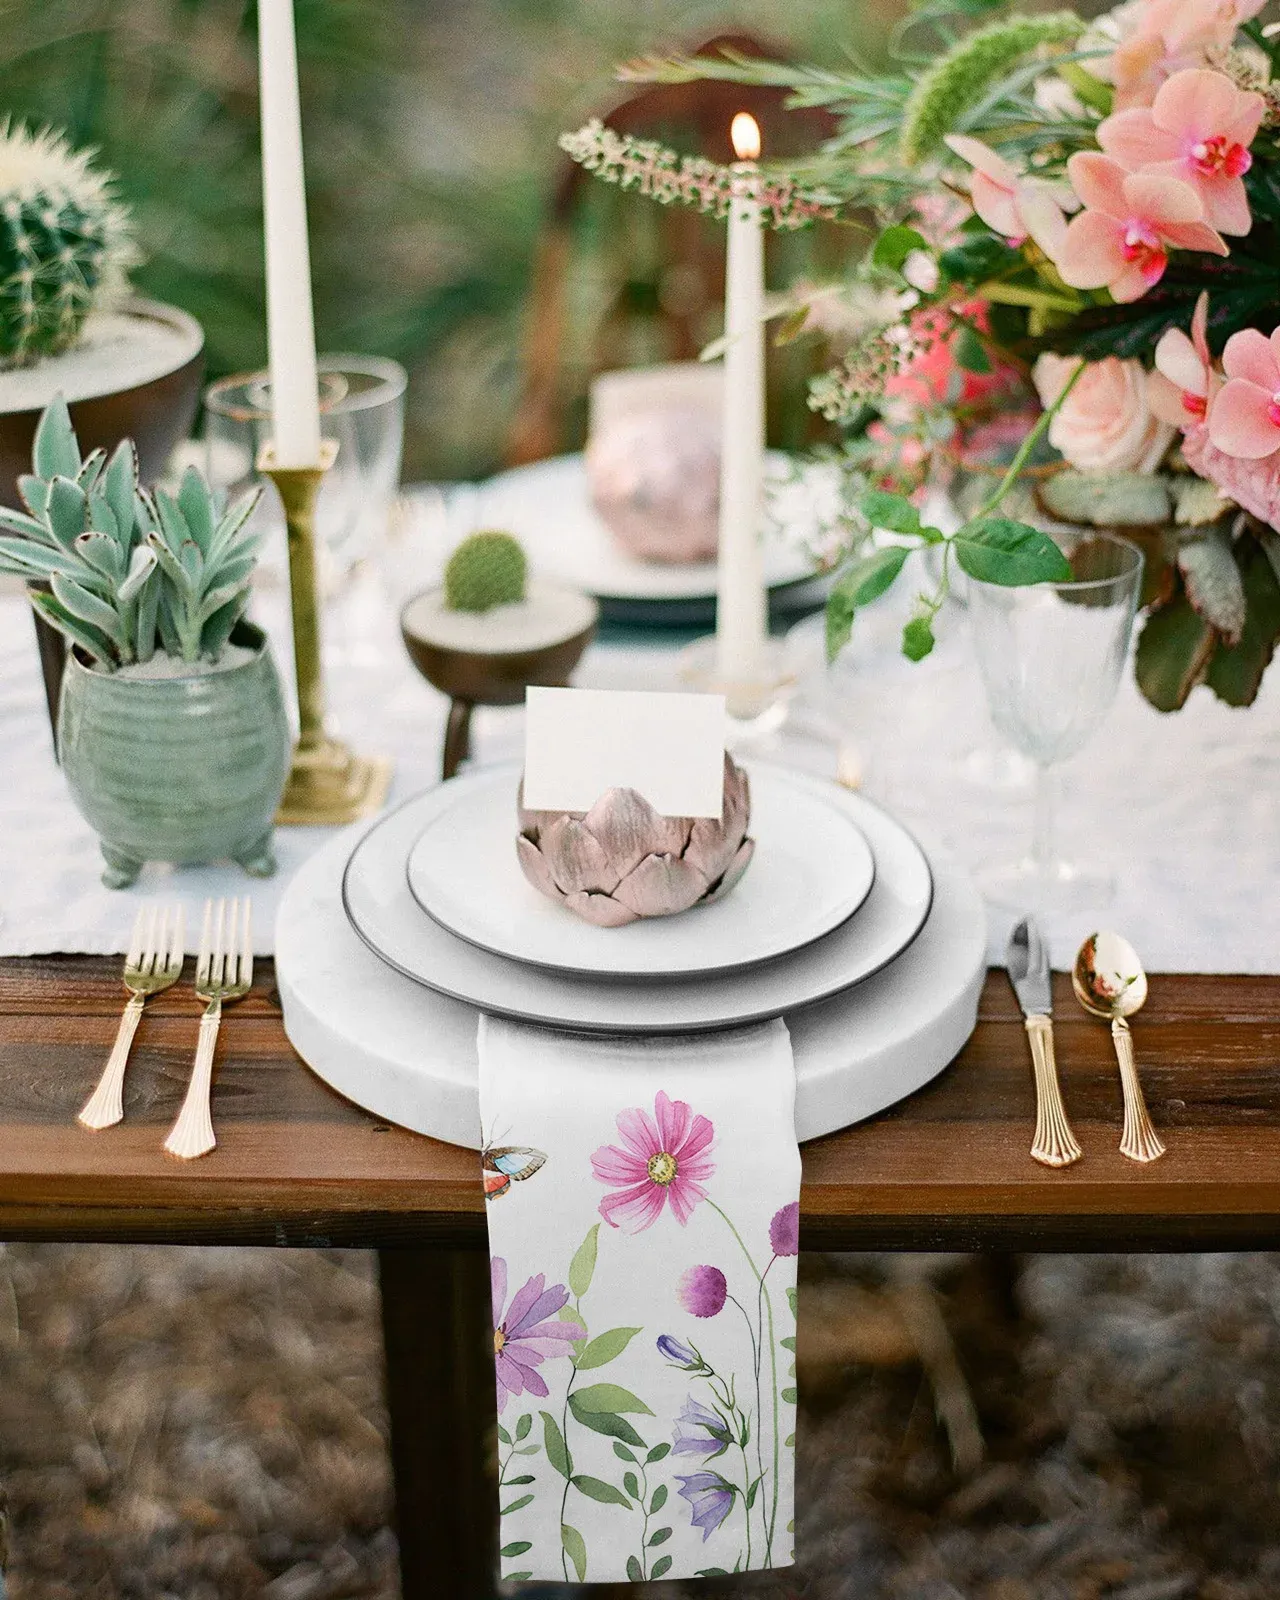 Leer bloem vlinder tafel servetten servetten stoffen set keuken diner thee handdoeken tabel ontwerp mat bruiloft decor servetten